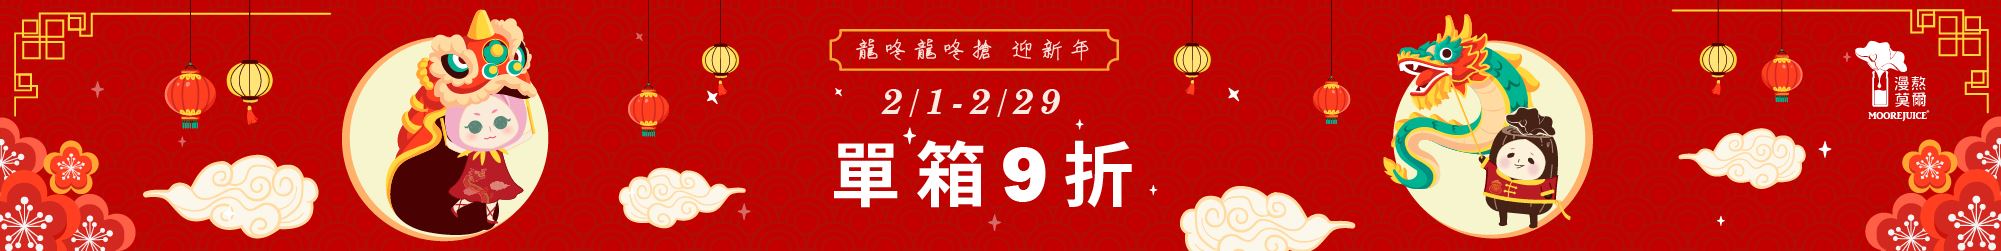 2月龍咚龍咚搶 迎新年-單箱9折